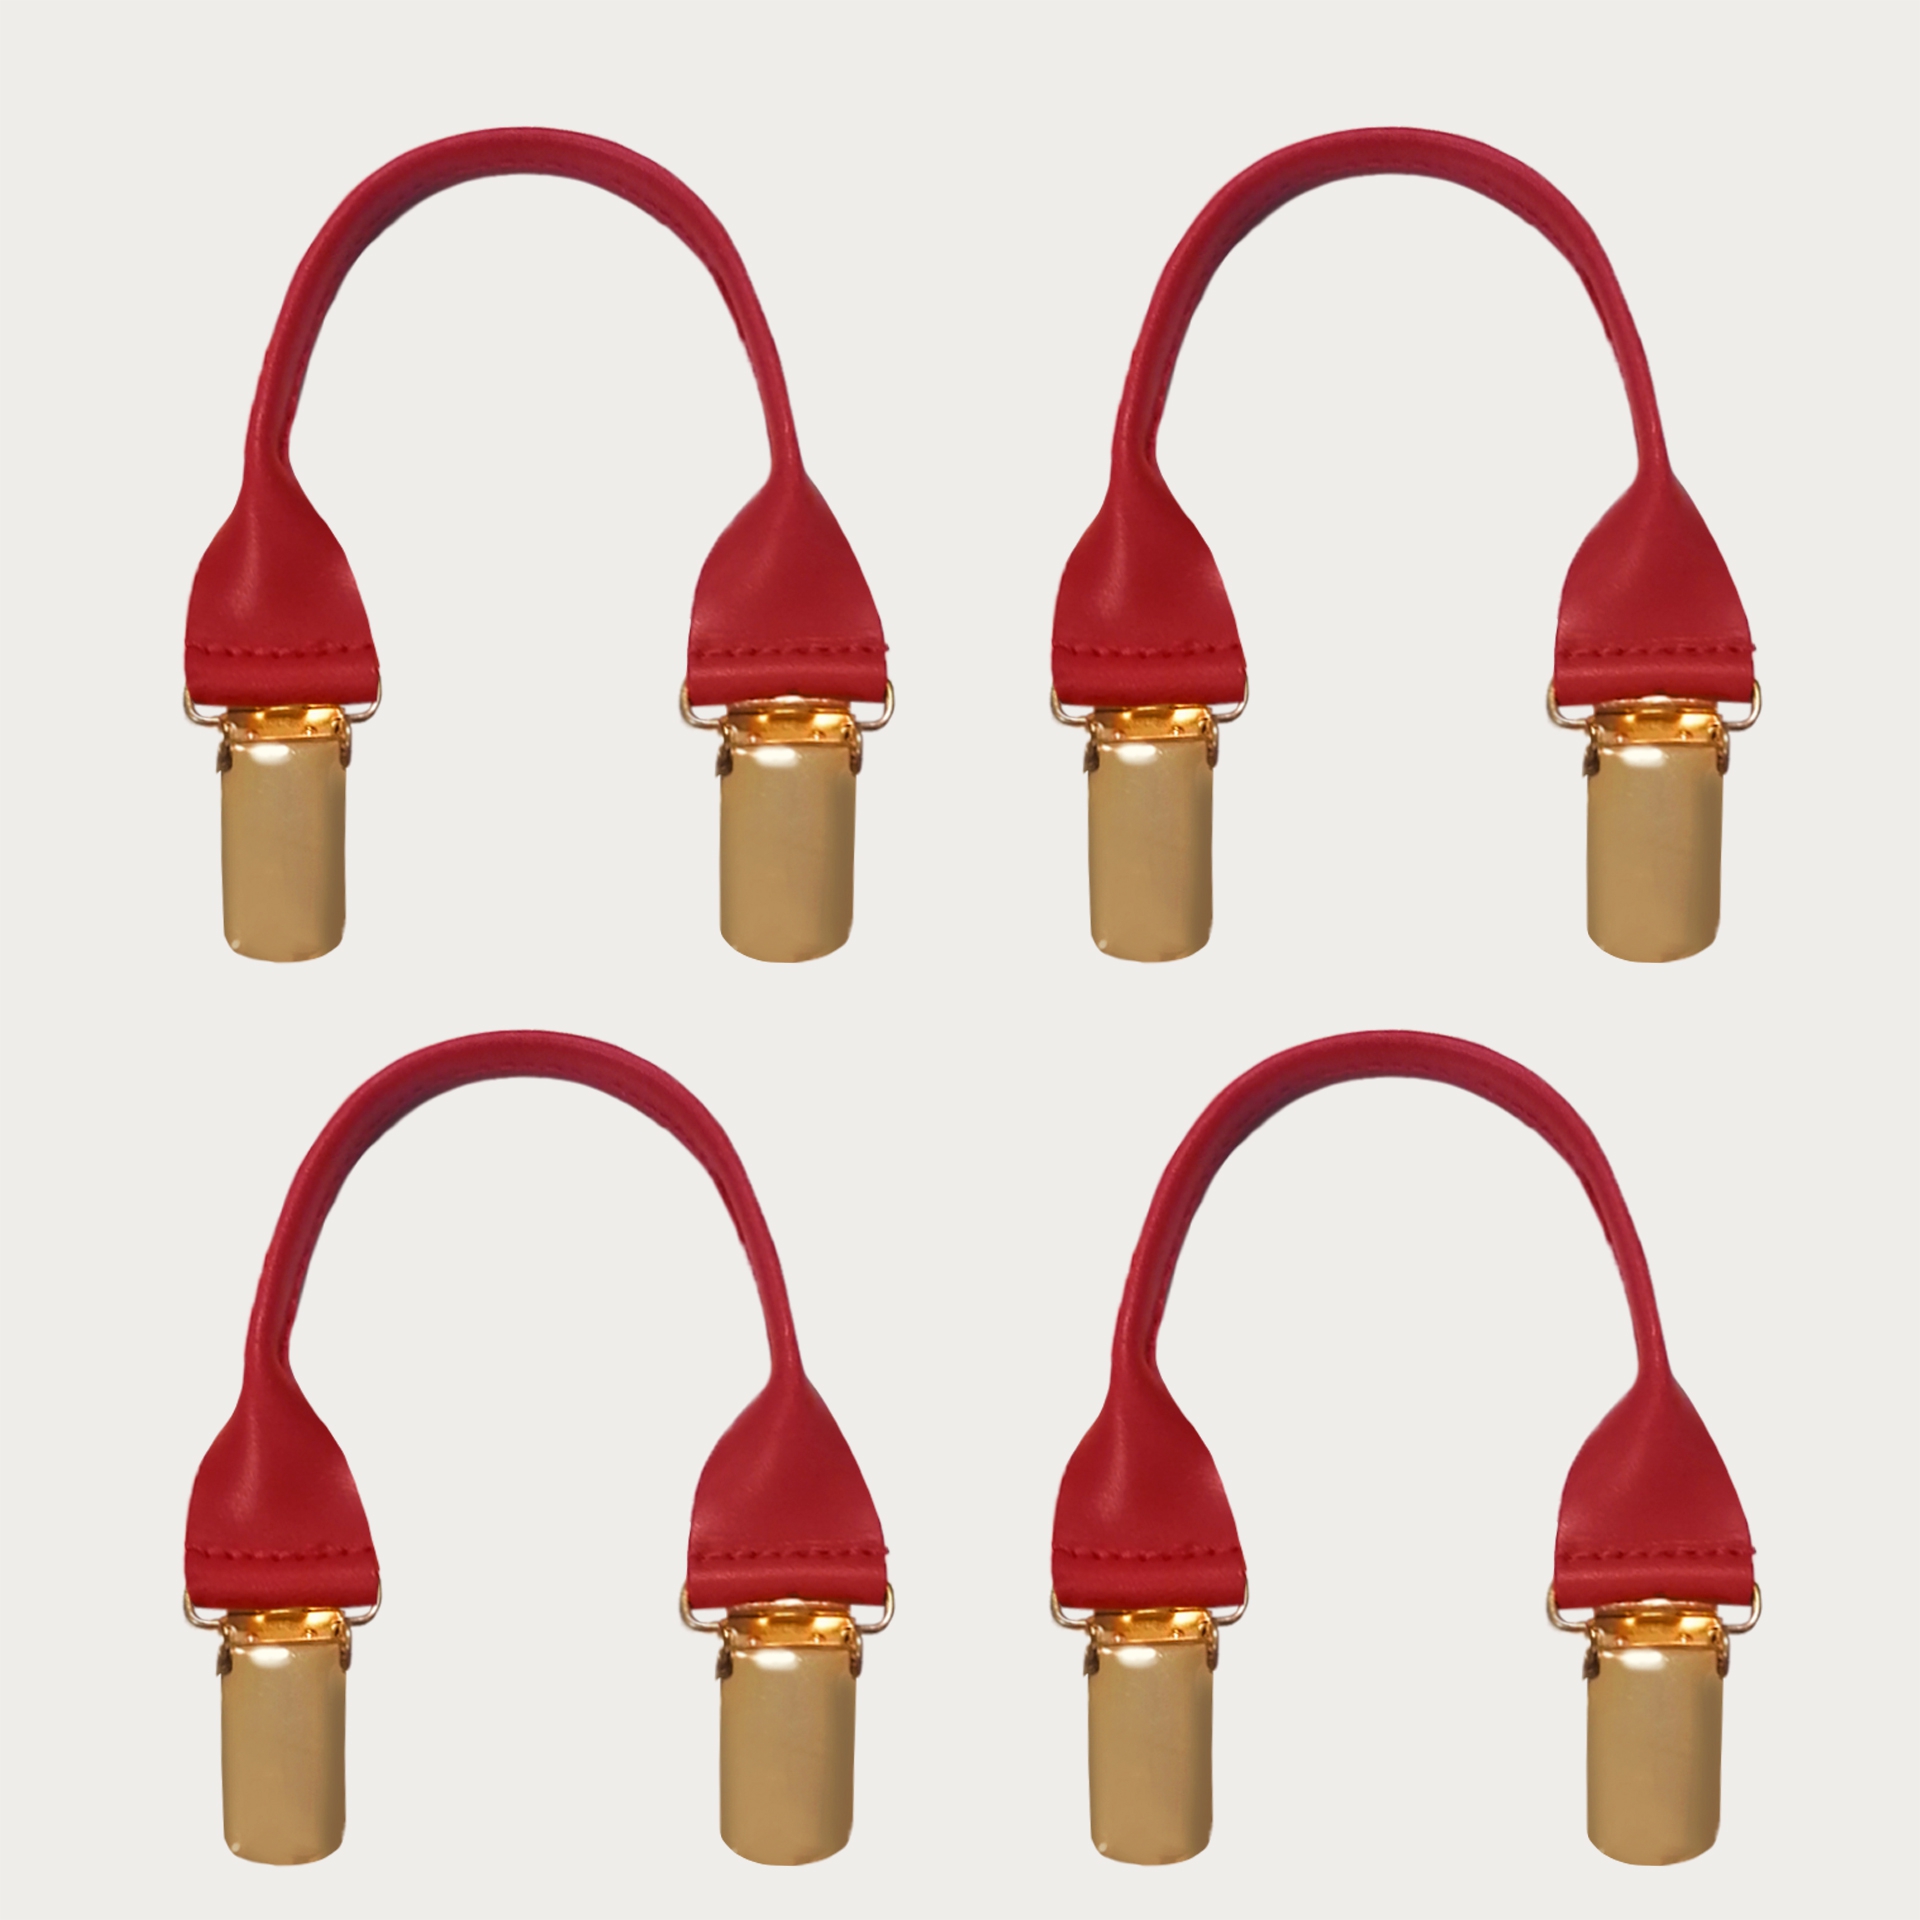 Knopfloch mit ersatzclip golden für Hosenträger rot, 4 stk